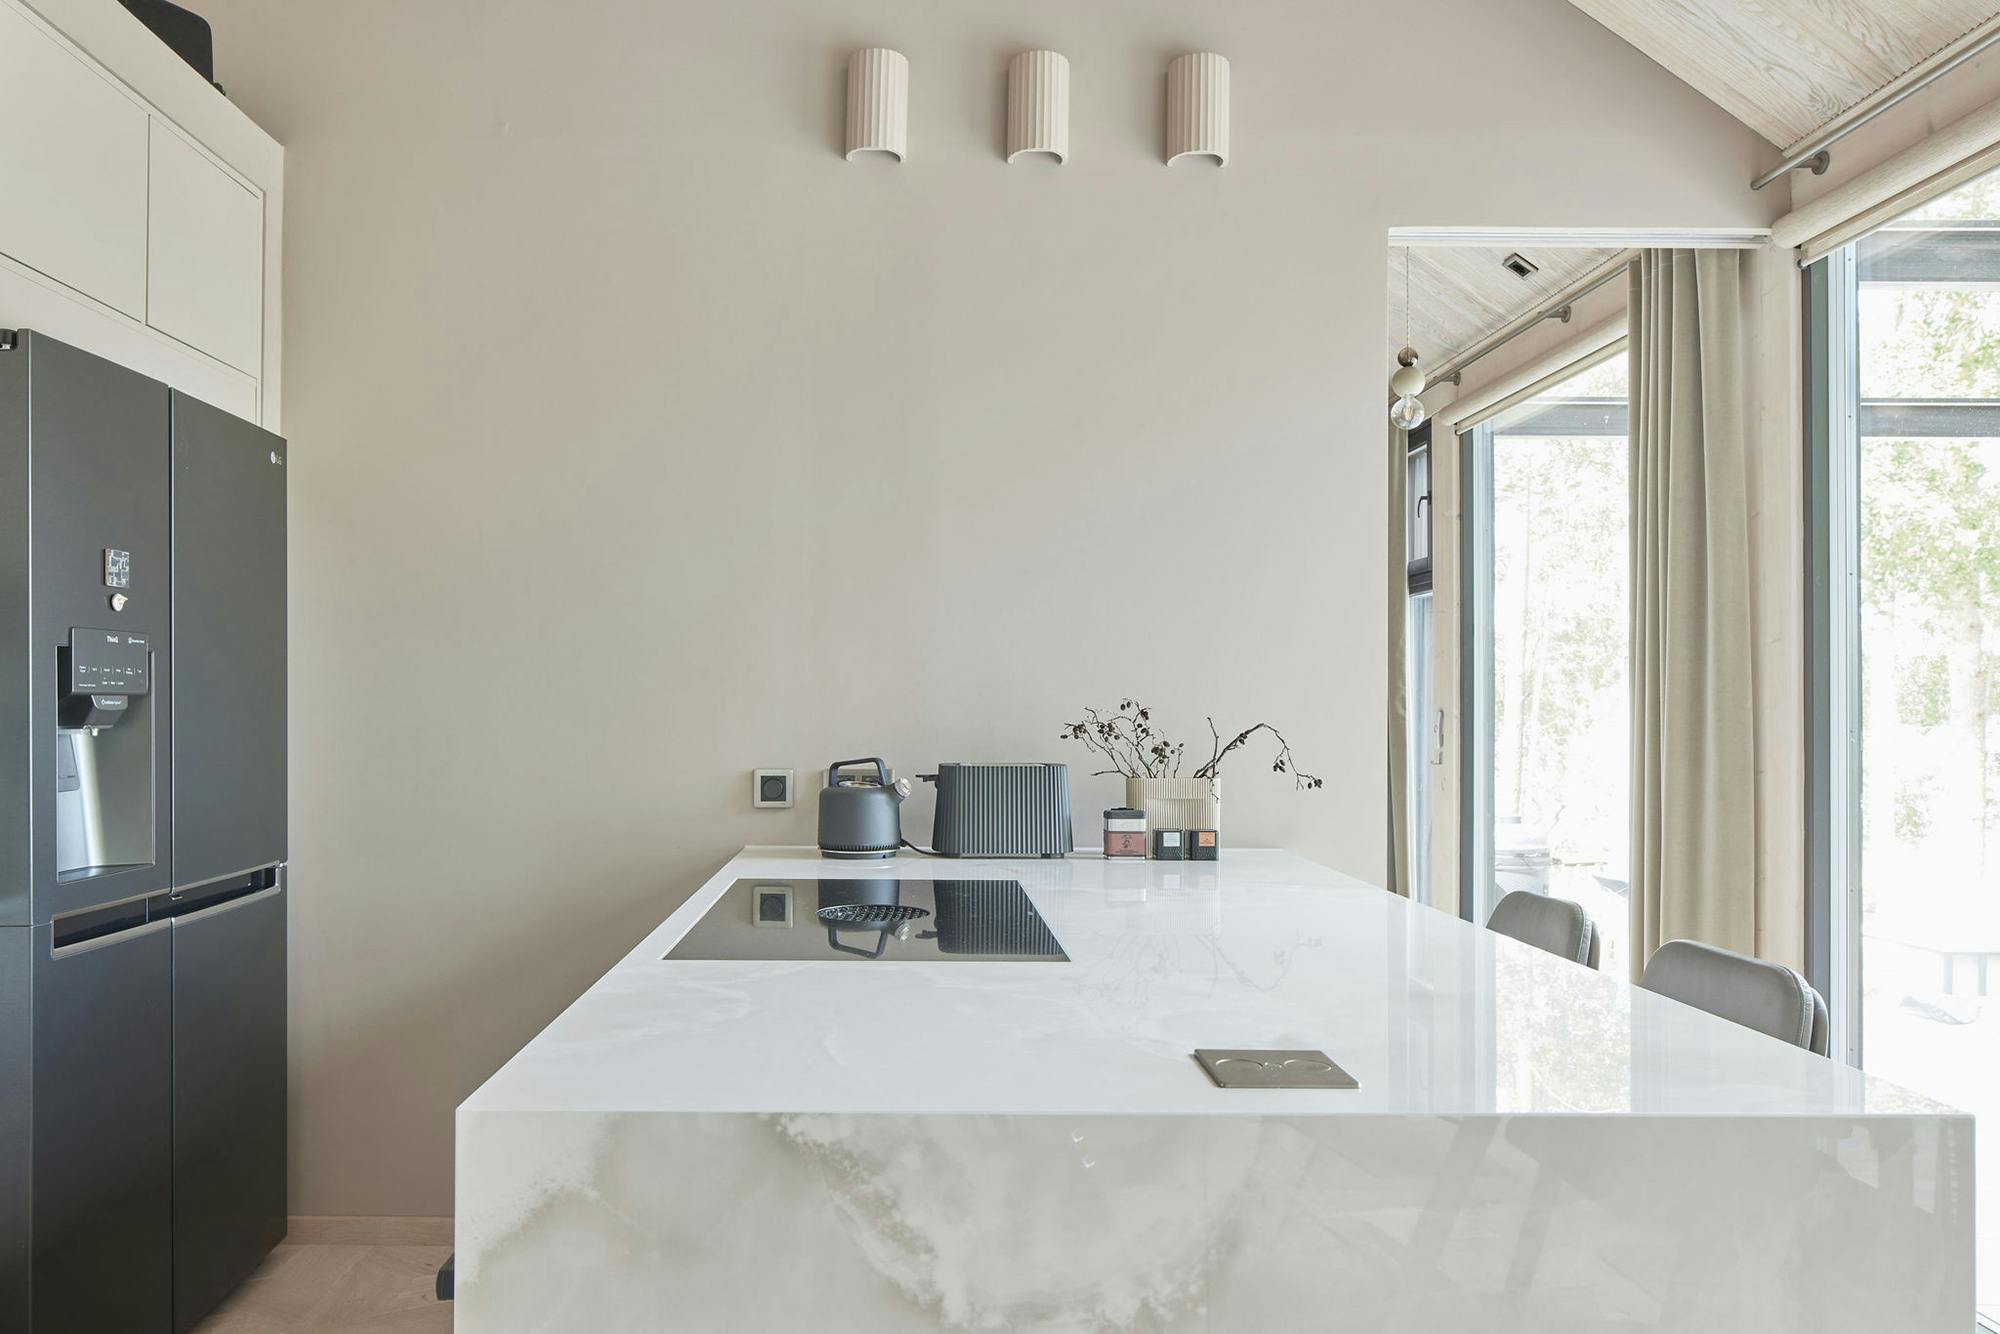 Numero immagine 36 della sezione corrente di Influencer Annamaria Väli-Klemelä chose sustainable countertops for her kitchen di Cosentino Italia